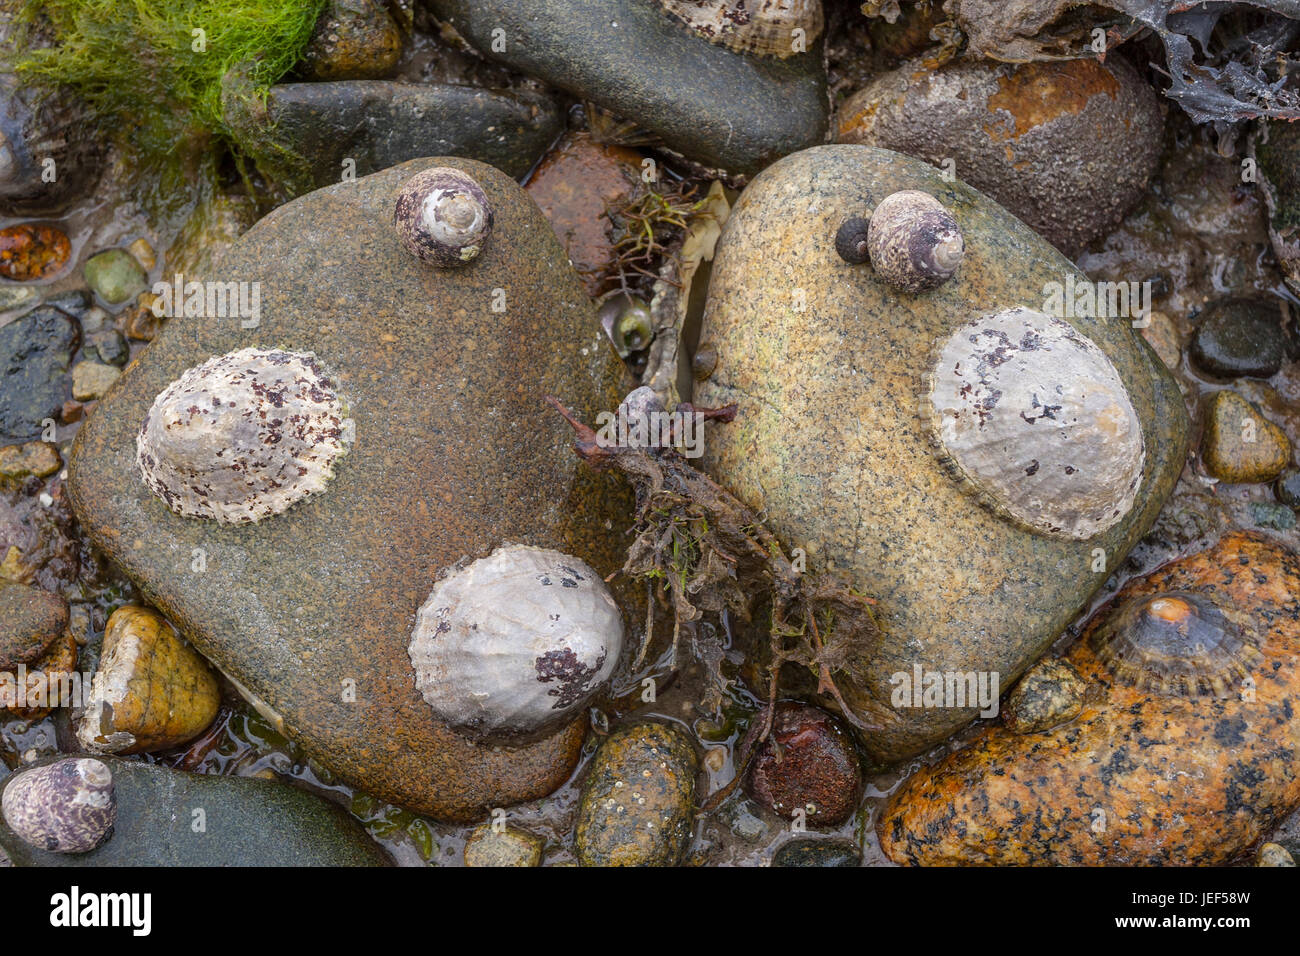 Limpet comune, Politica europea comune in materia di limpet (Patella vulgata) su roccia, (Patellidae), Brittany, Francia Foto Stock